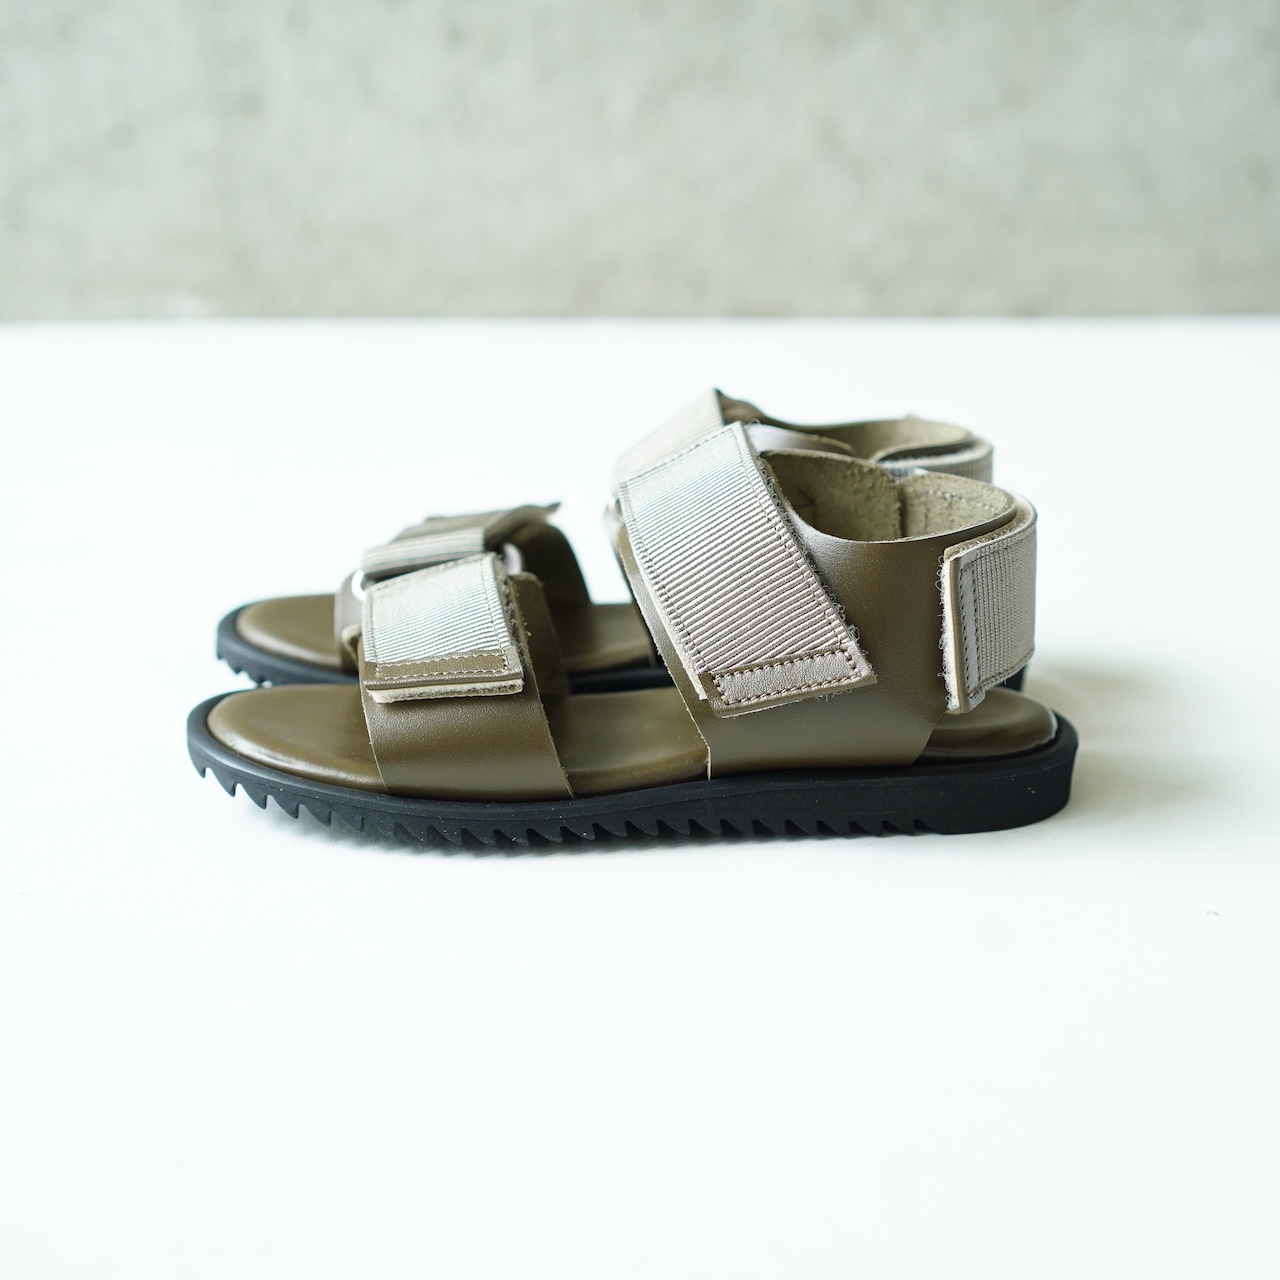 NINOS / WP Sandal / サンダル / 17〜21cm / Khaki